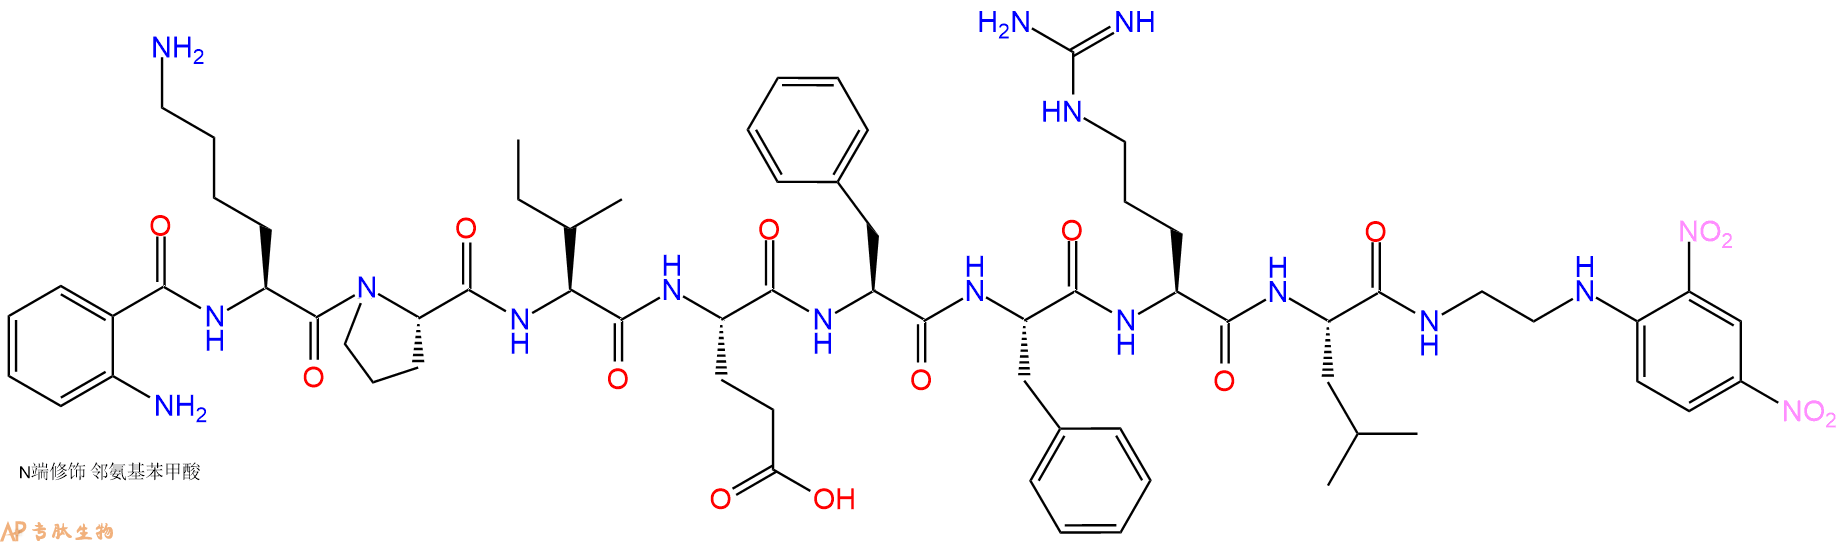 专肽生物产品八肽Abz-KPIEFFRL-EDDnp